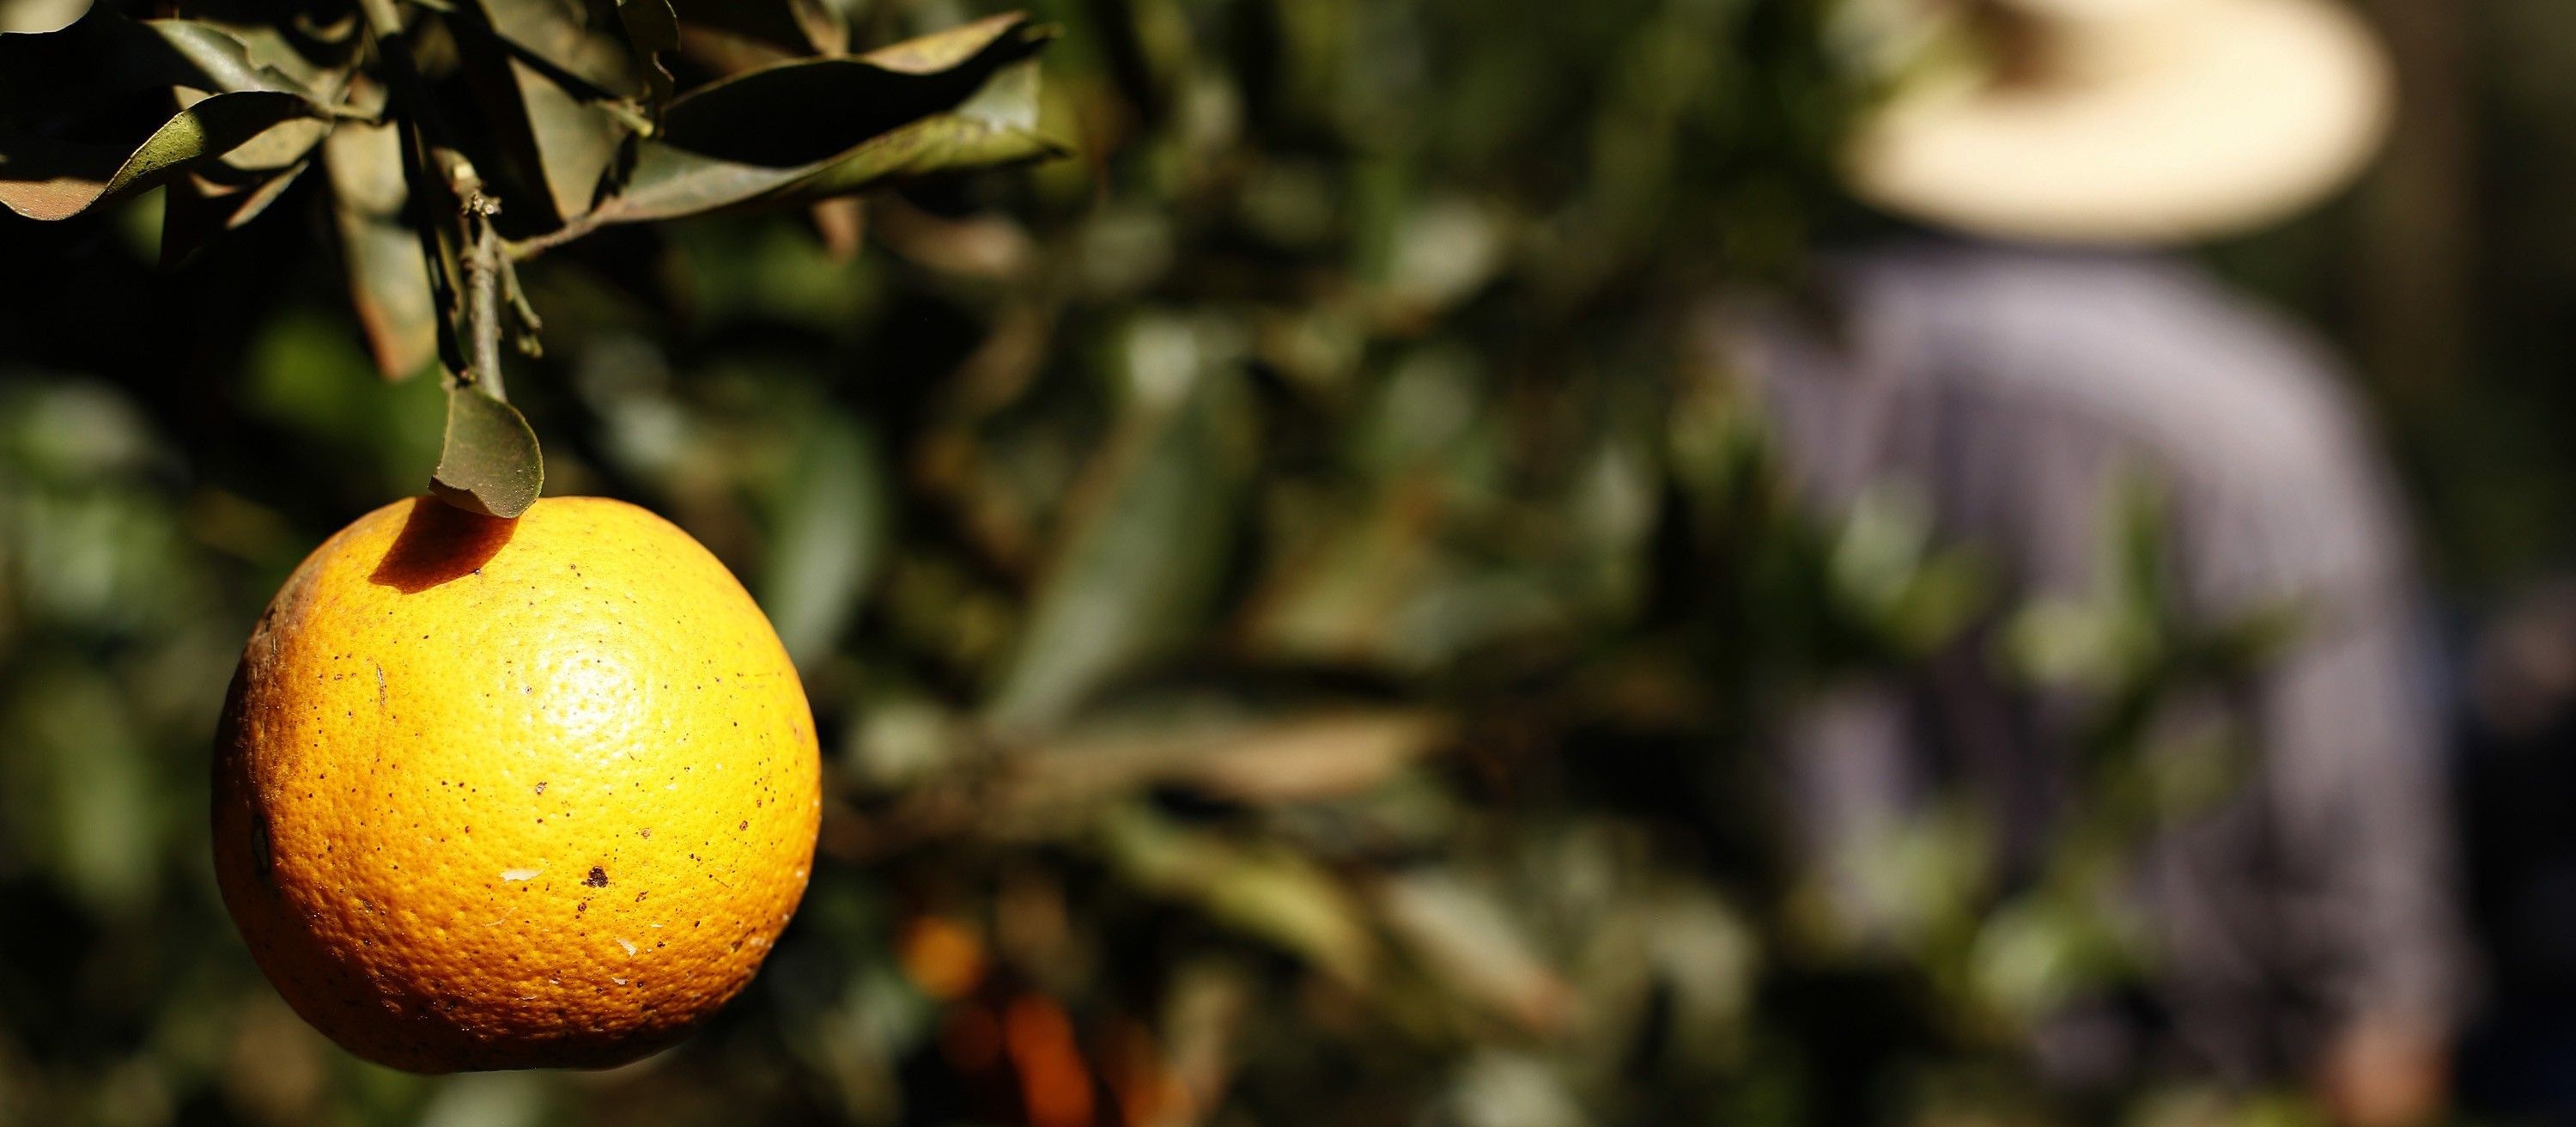 Greening avança de forma severa nos pomares de laranja